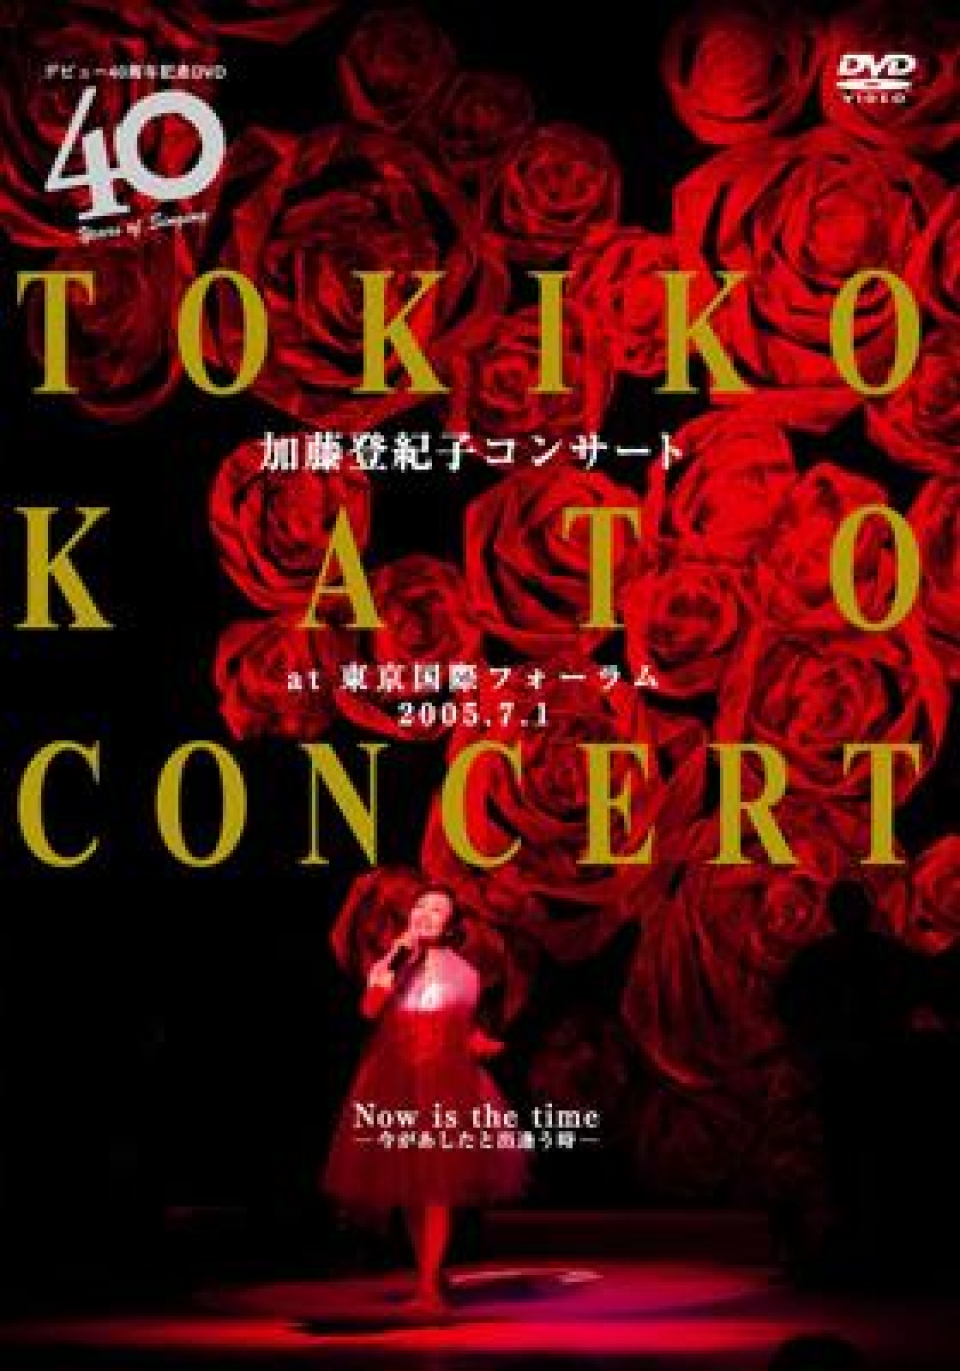 加藤登紀子コンサート at 東京国際フォーラム 2005.7.1